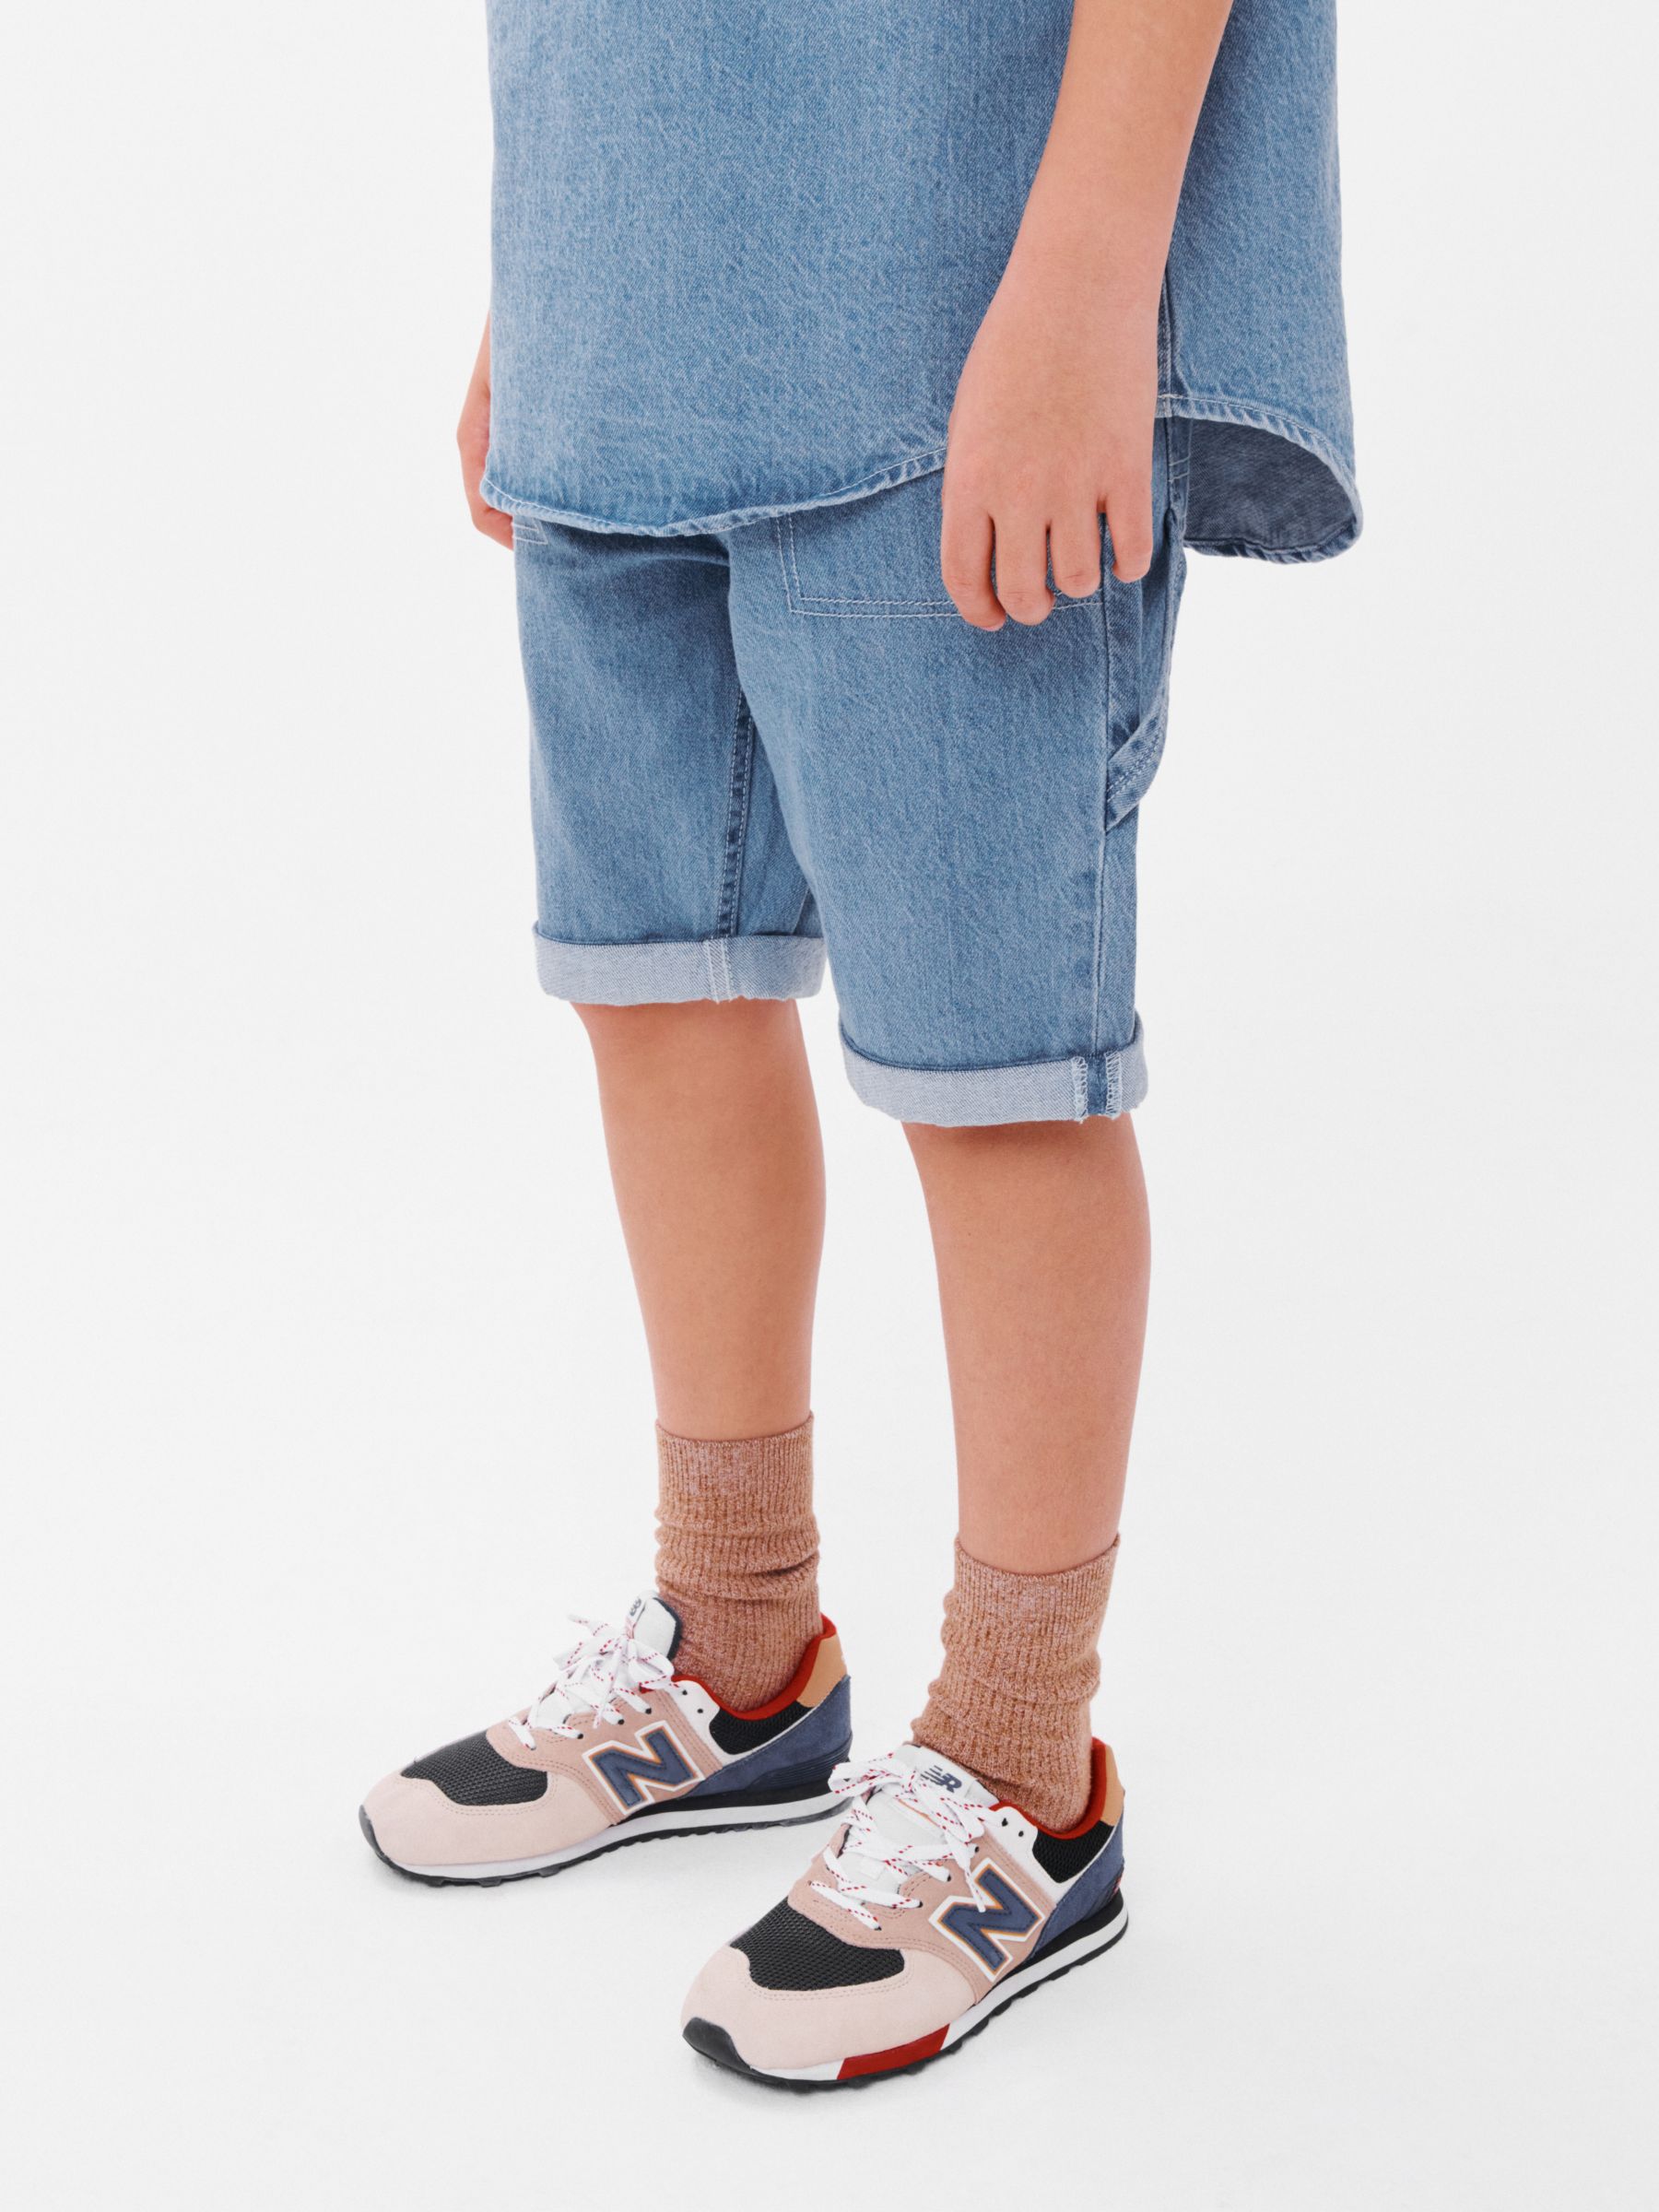 Vintage Carpenter Denim Shorts - Blue – N V L T Y